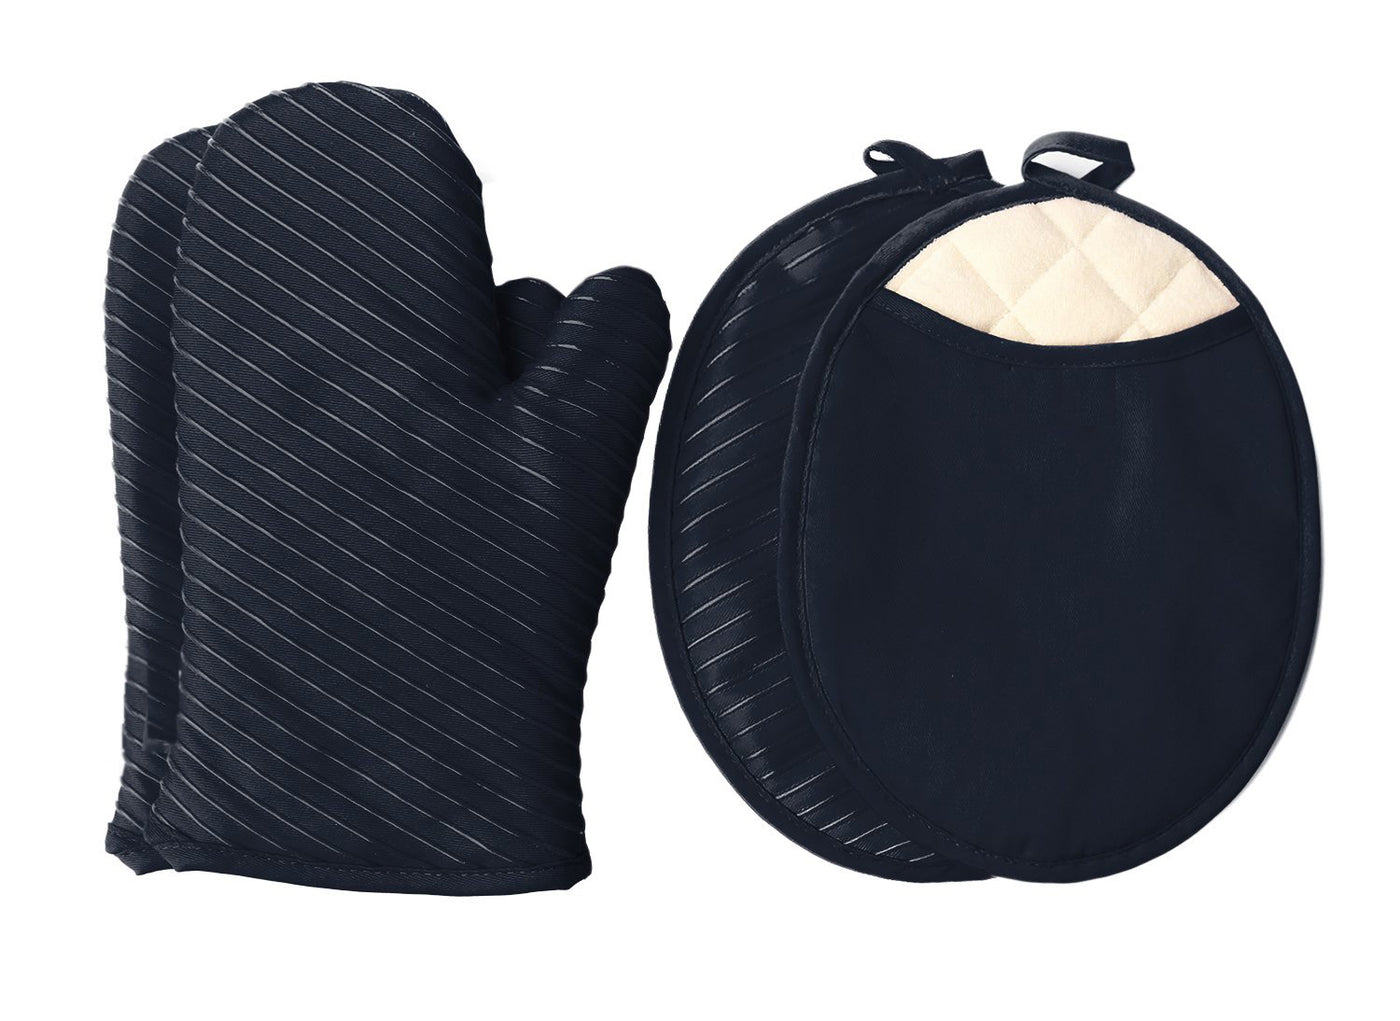 锅垫和烤箱手套、2 个锅垫和 2 个热垫、厨房亚麻布套装 - 黑色